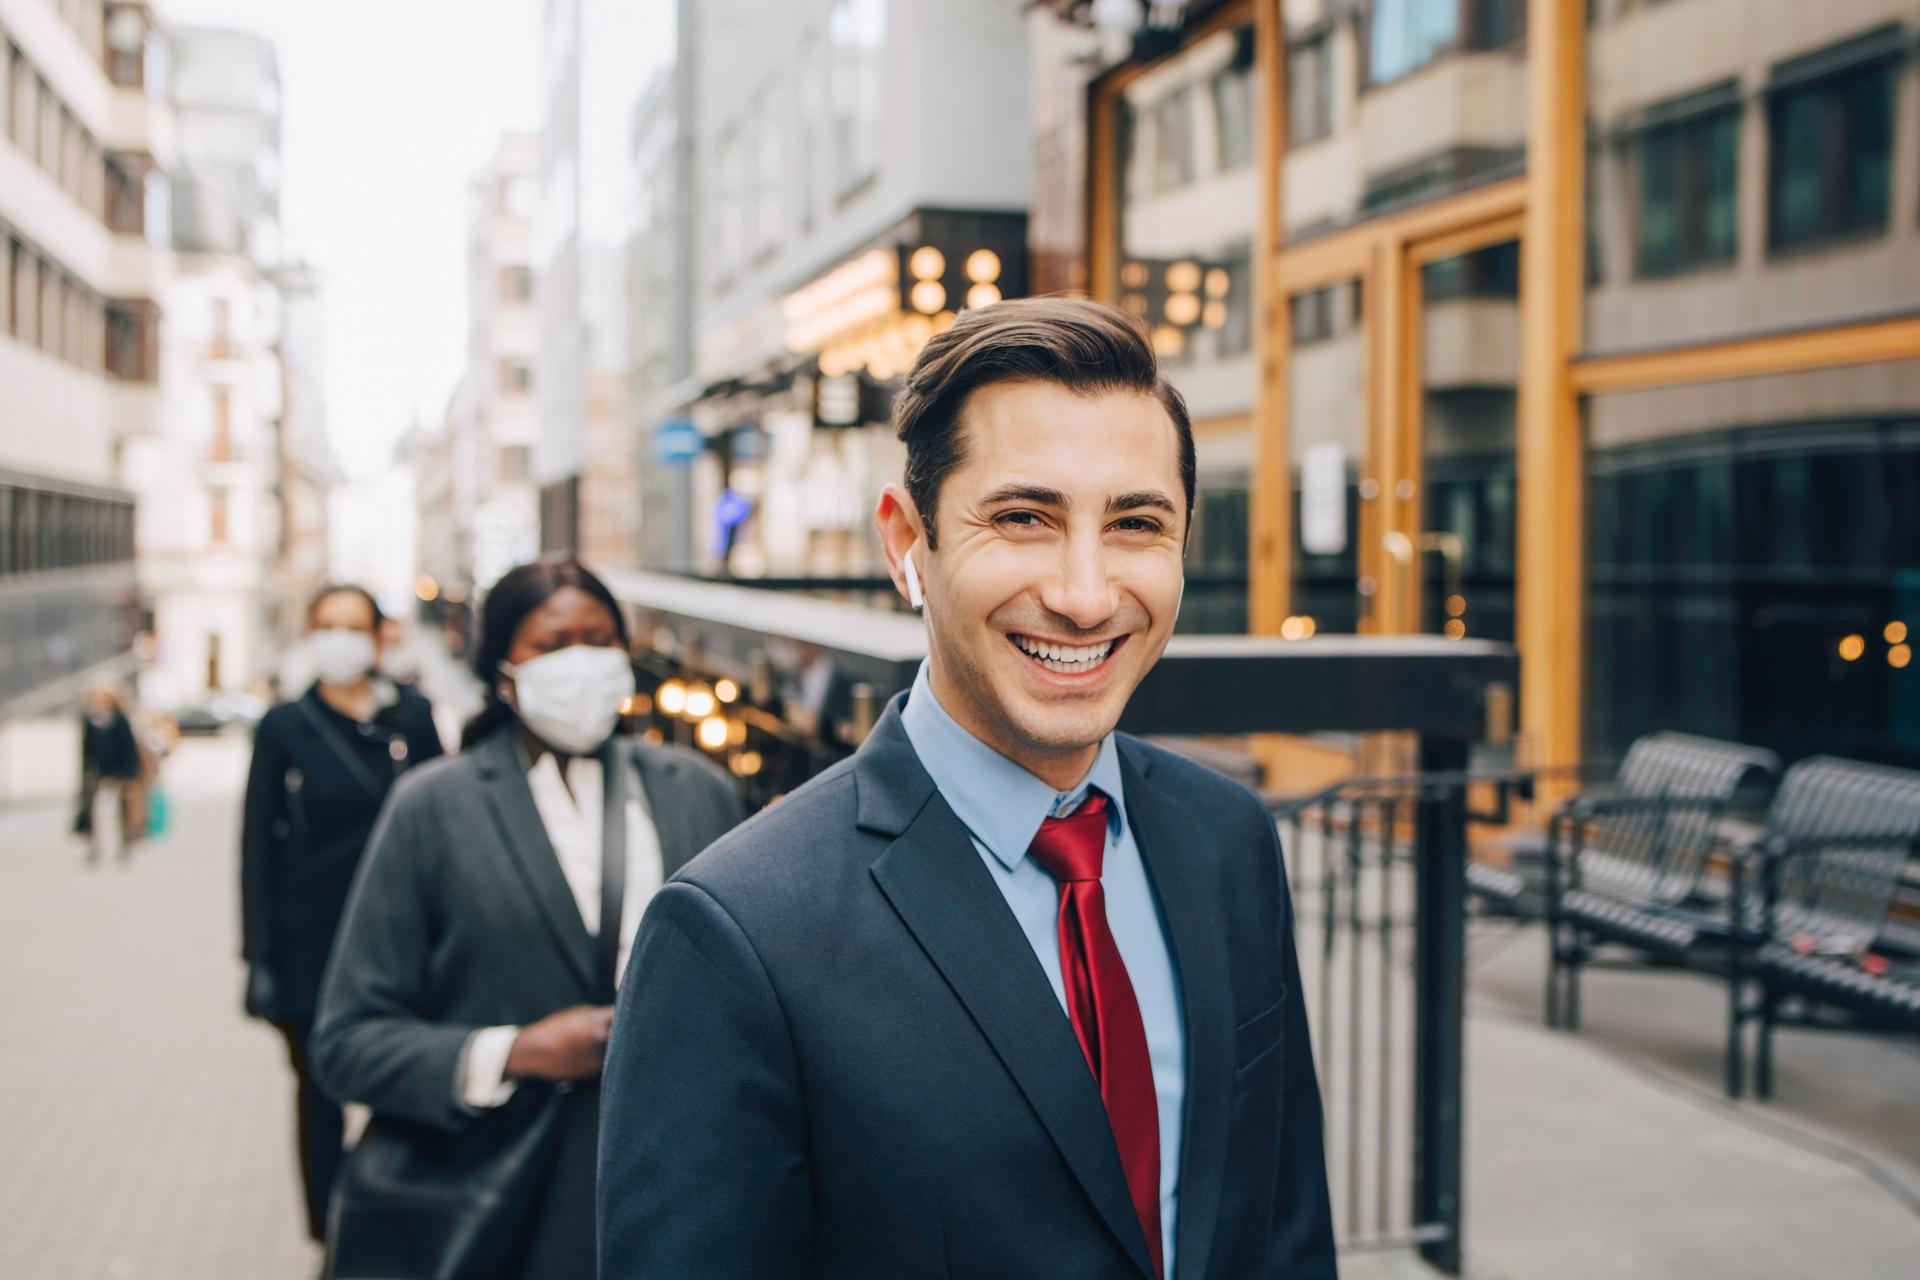 Ein junger Mann in Business-Kleidung läuft auf einer urbanen Straße mit kabellosem Kopfhörer im Ohr und blickt dabei lächelnd in die Kamera, 